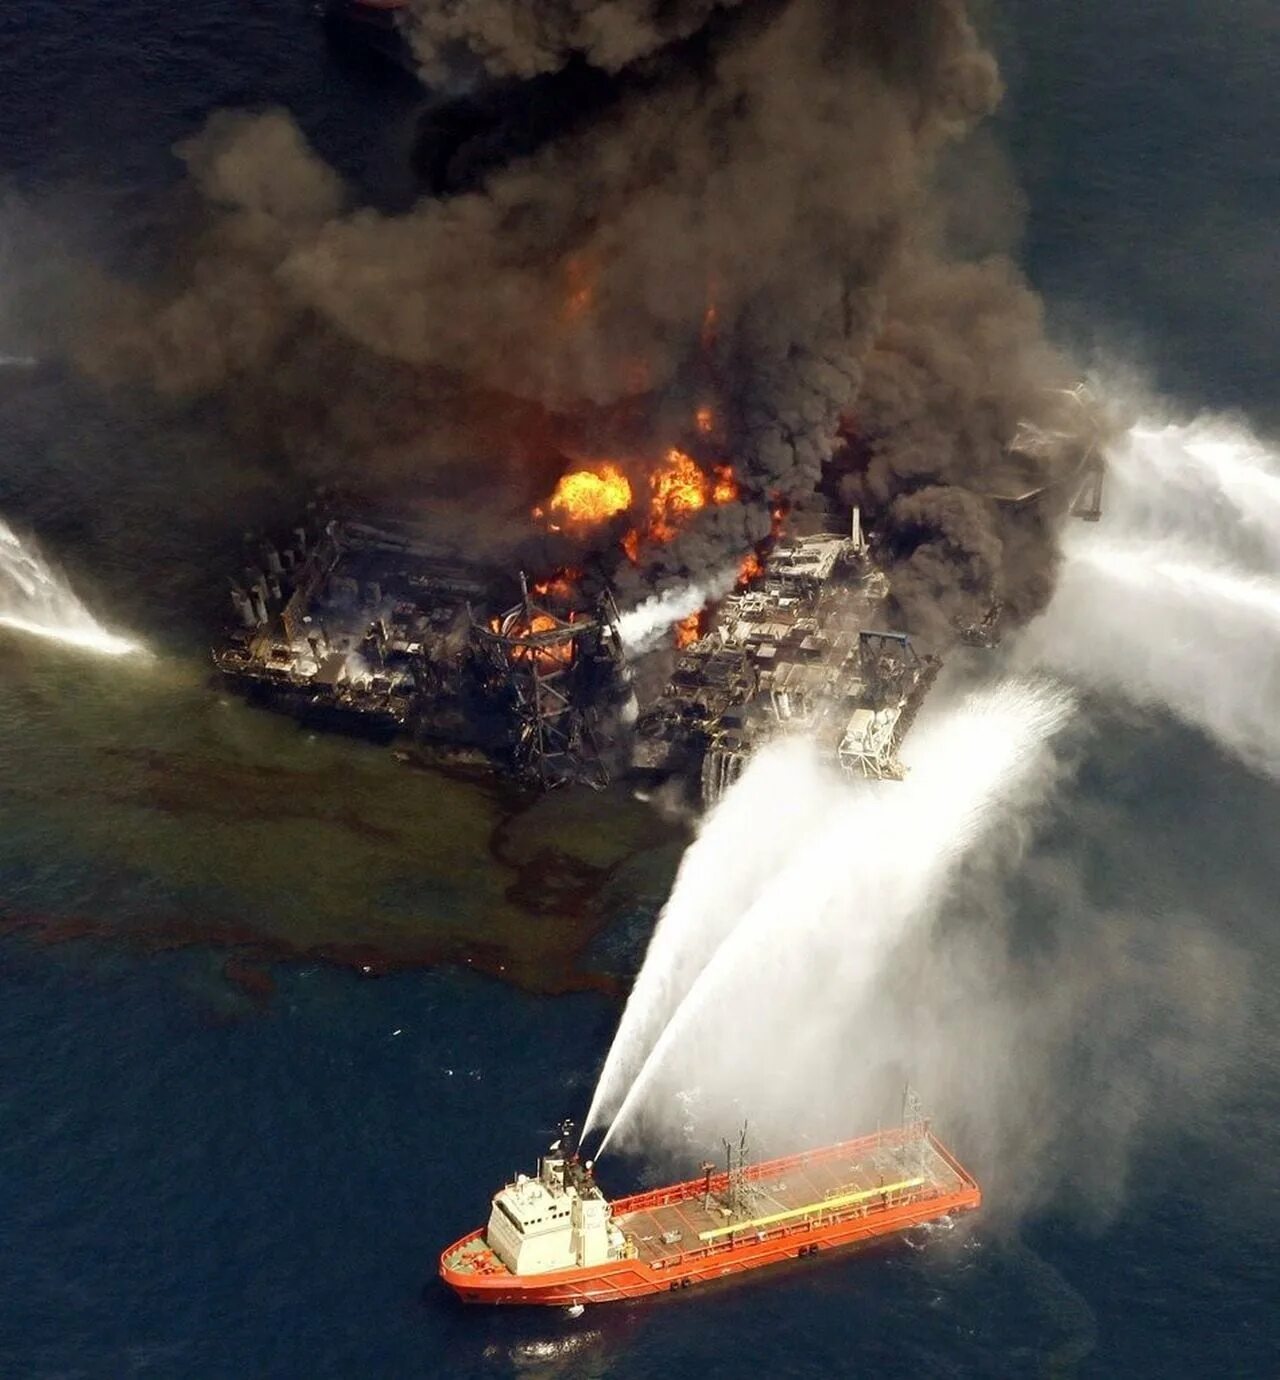 30 апреля 2010. Взрыв нефтяной платформы Deepwater Horizon - 20 апреля 2010 года. Взрыв нефтяной платформы Deepwater Horizon в мексиканском заливе 2010. Катастрофа в мексиканском заливе в 2010 году. Взрыв на нефтяной платформе в мексиканском заливе 2010.